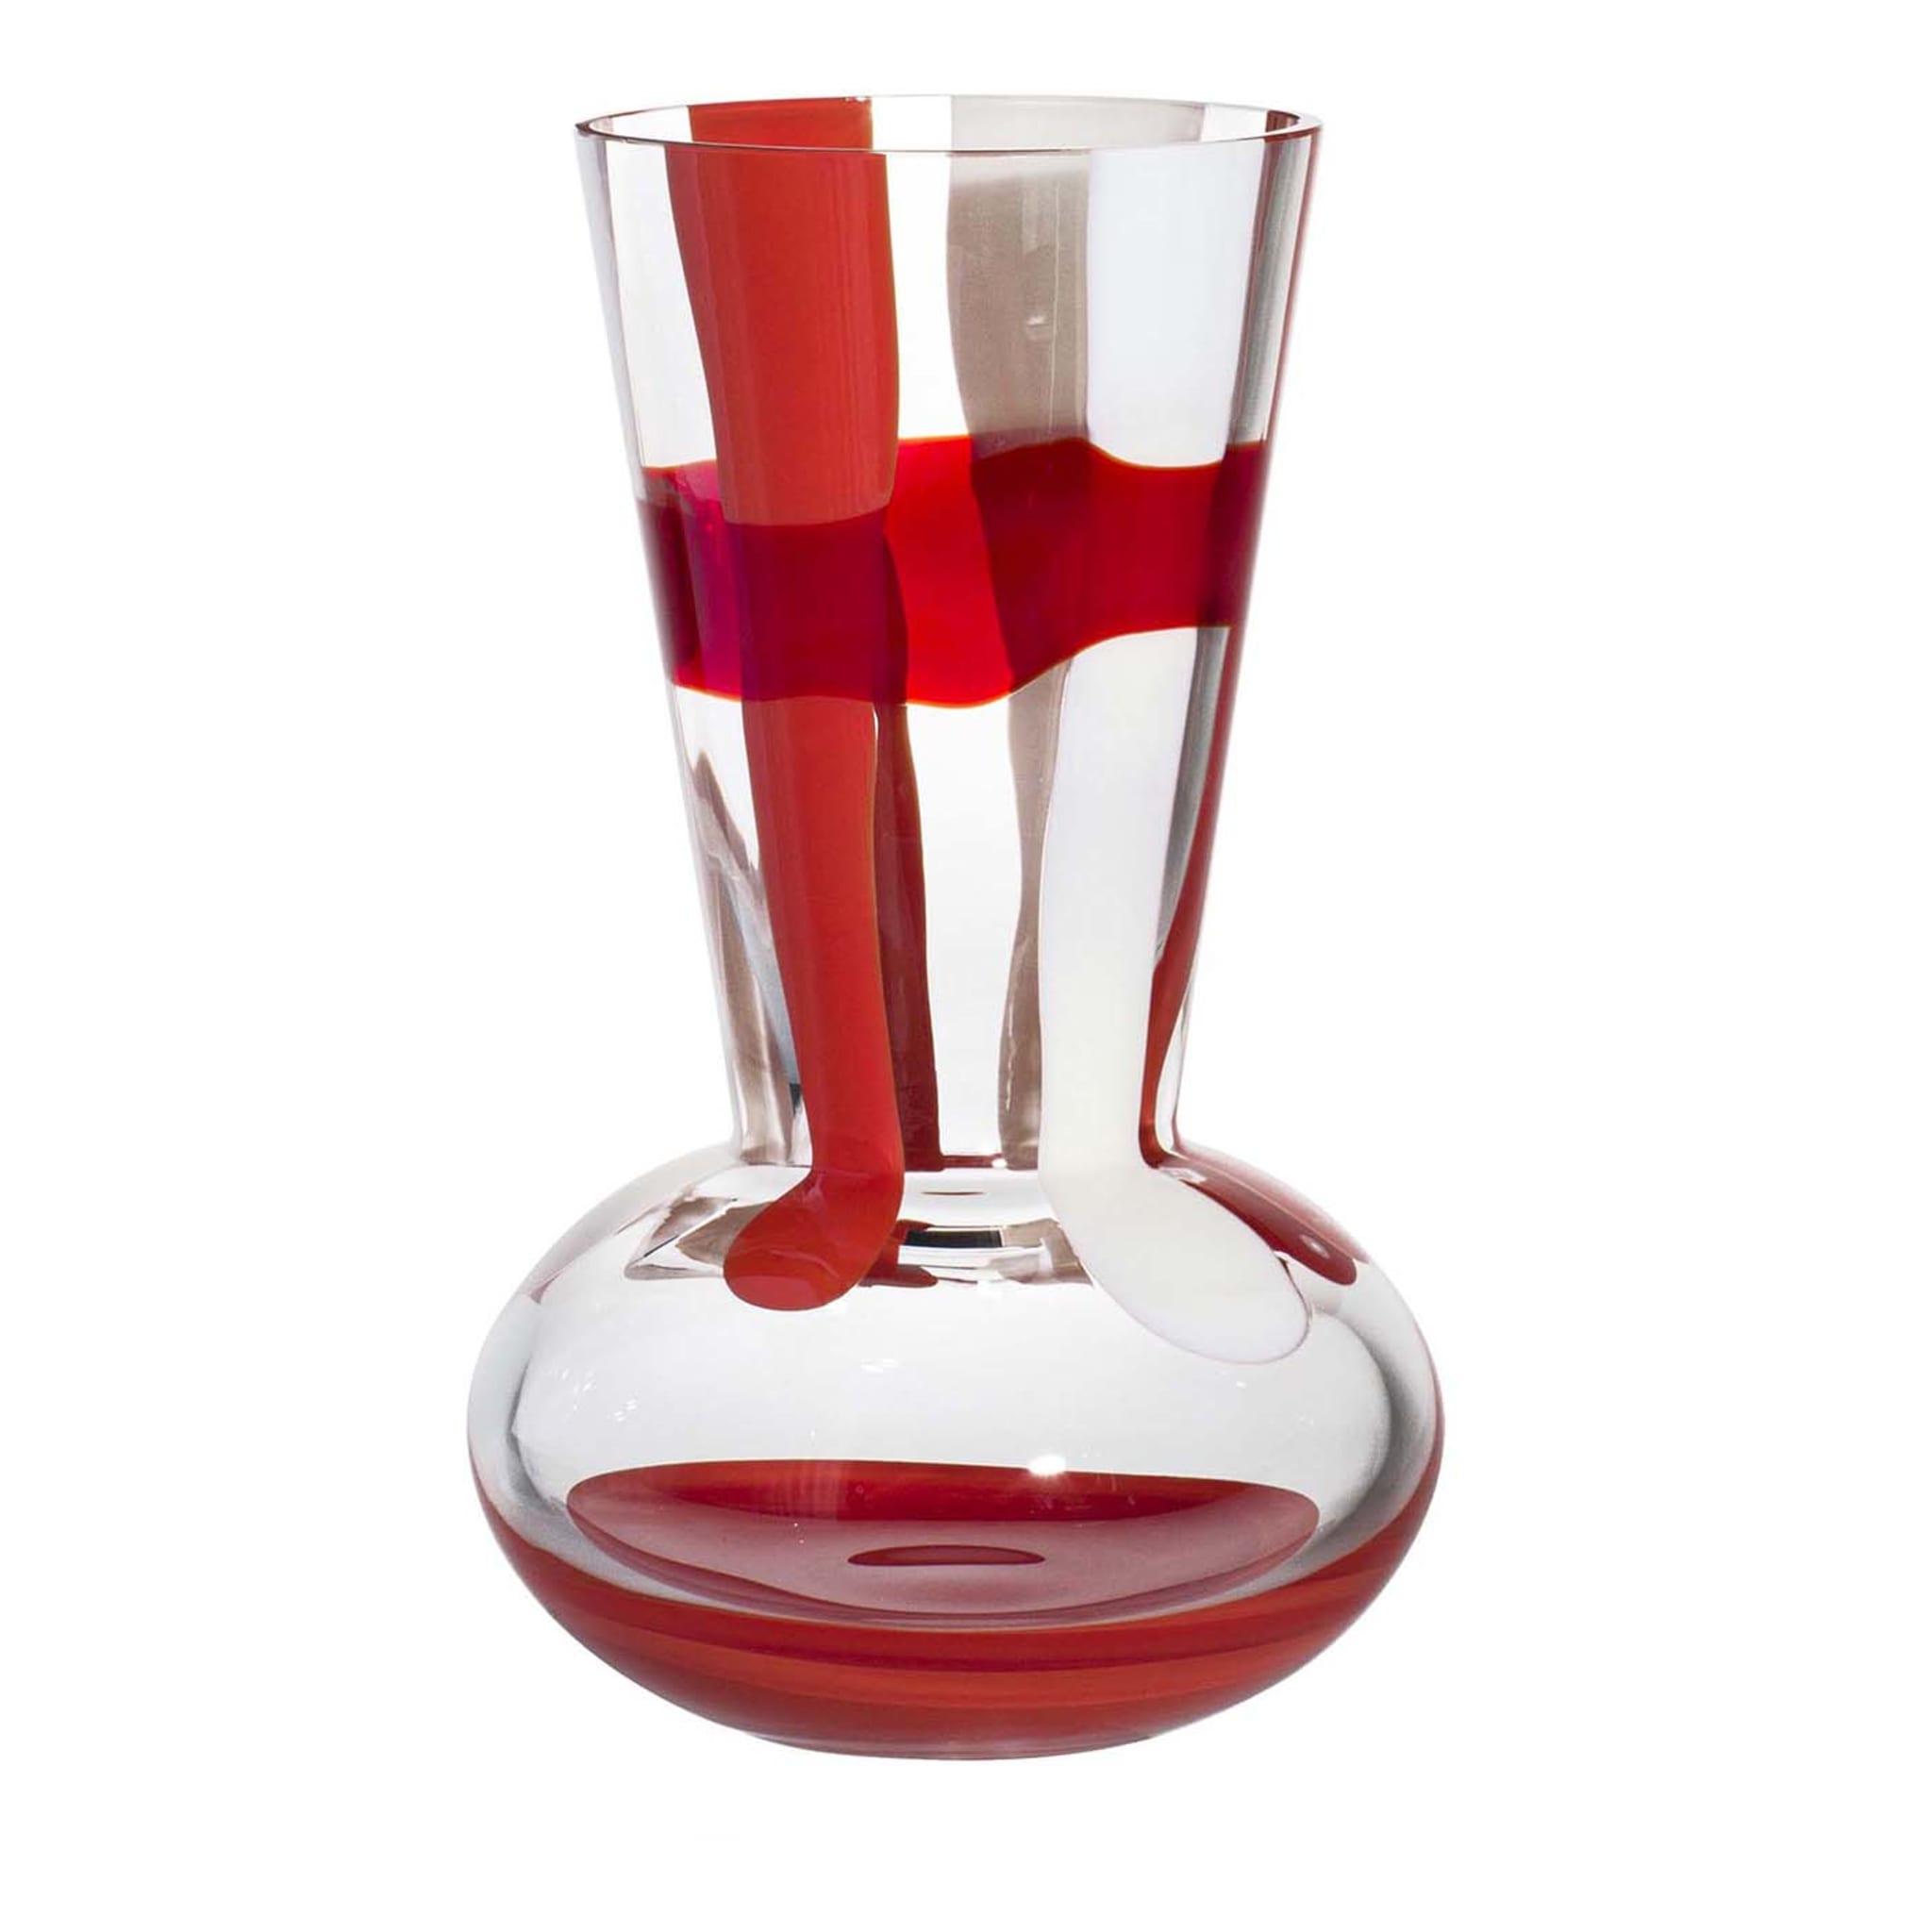 Troncosfera Vase mit roten und weißen Streifen von Carlo Moretti - Hauptansicht